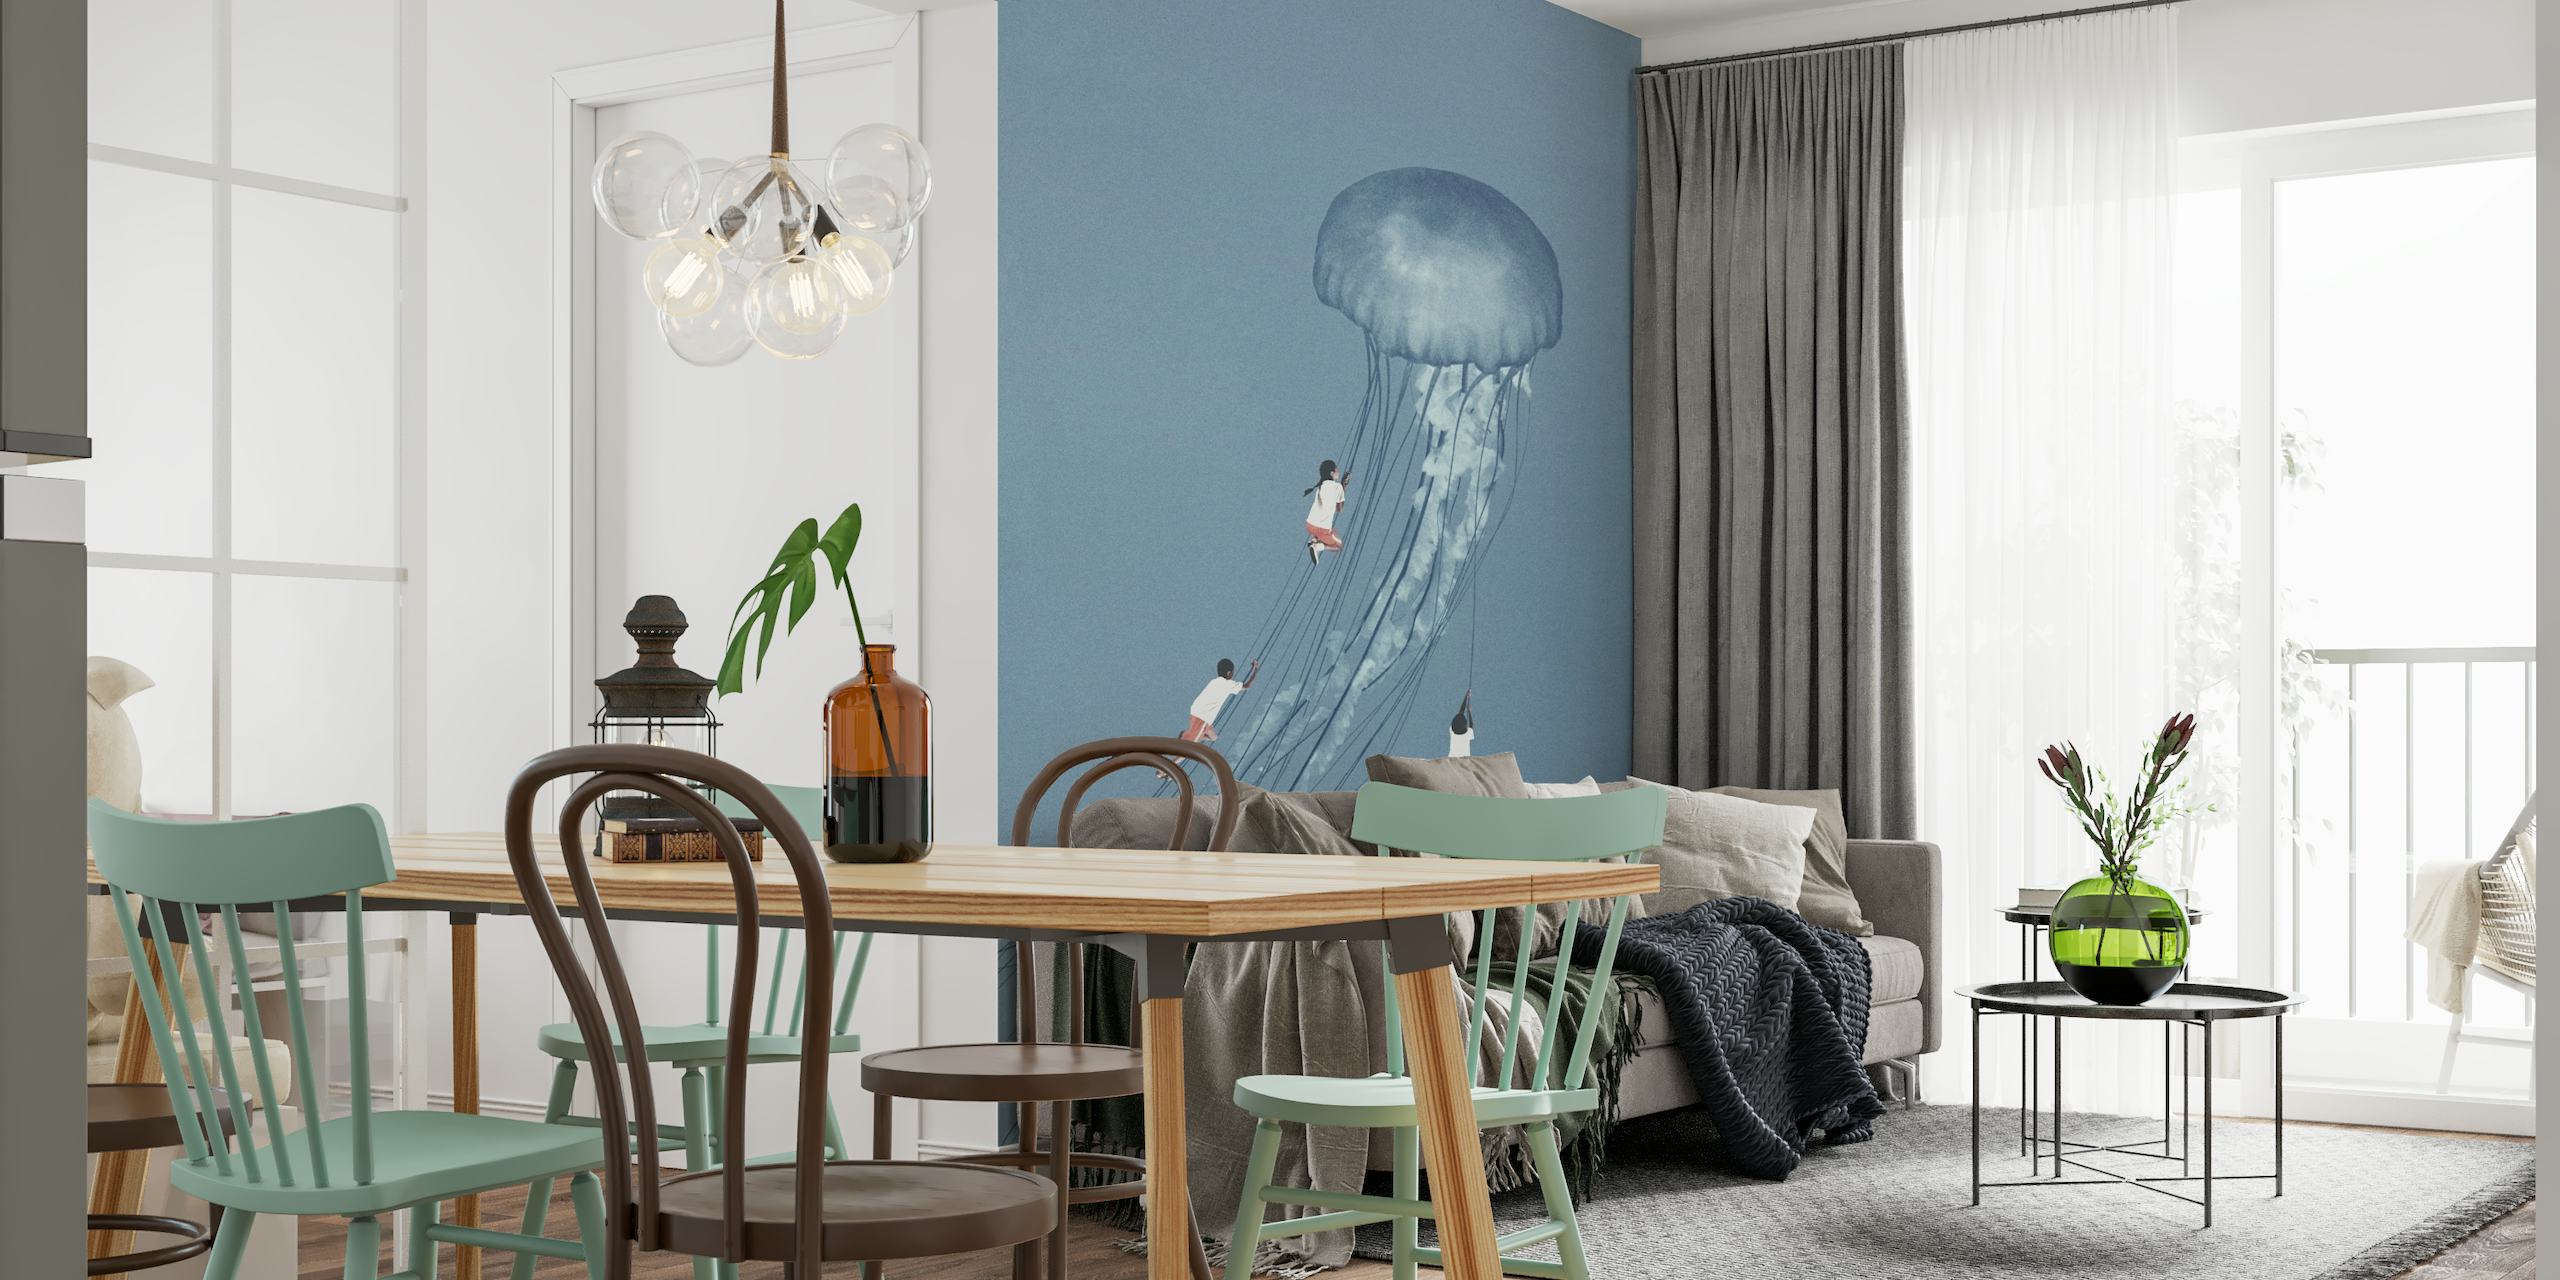 Surrealistyczna fototapeta meduza z postaciami